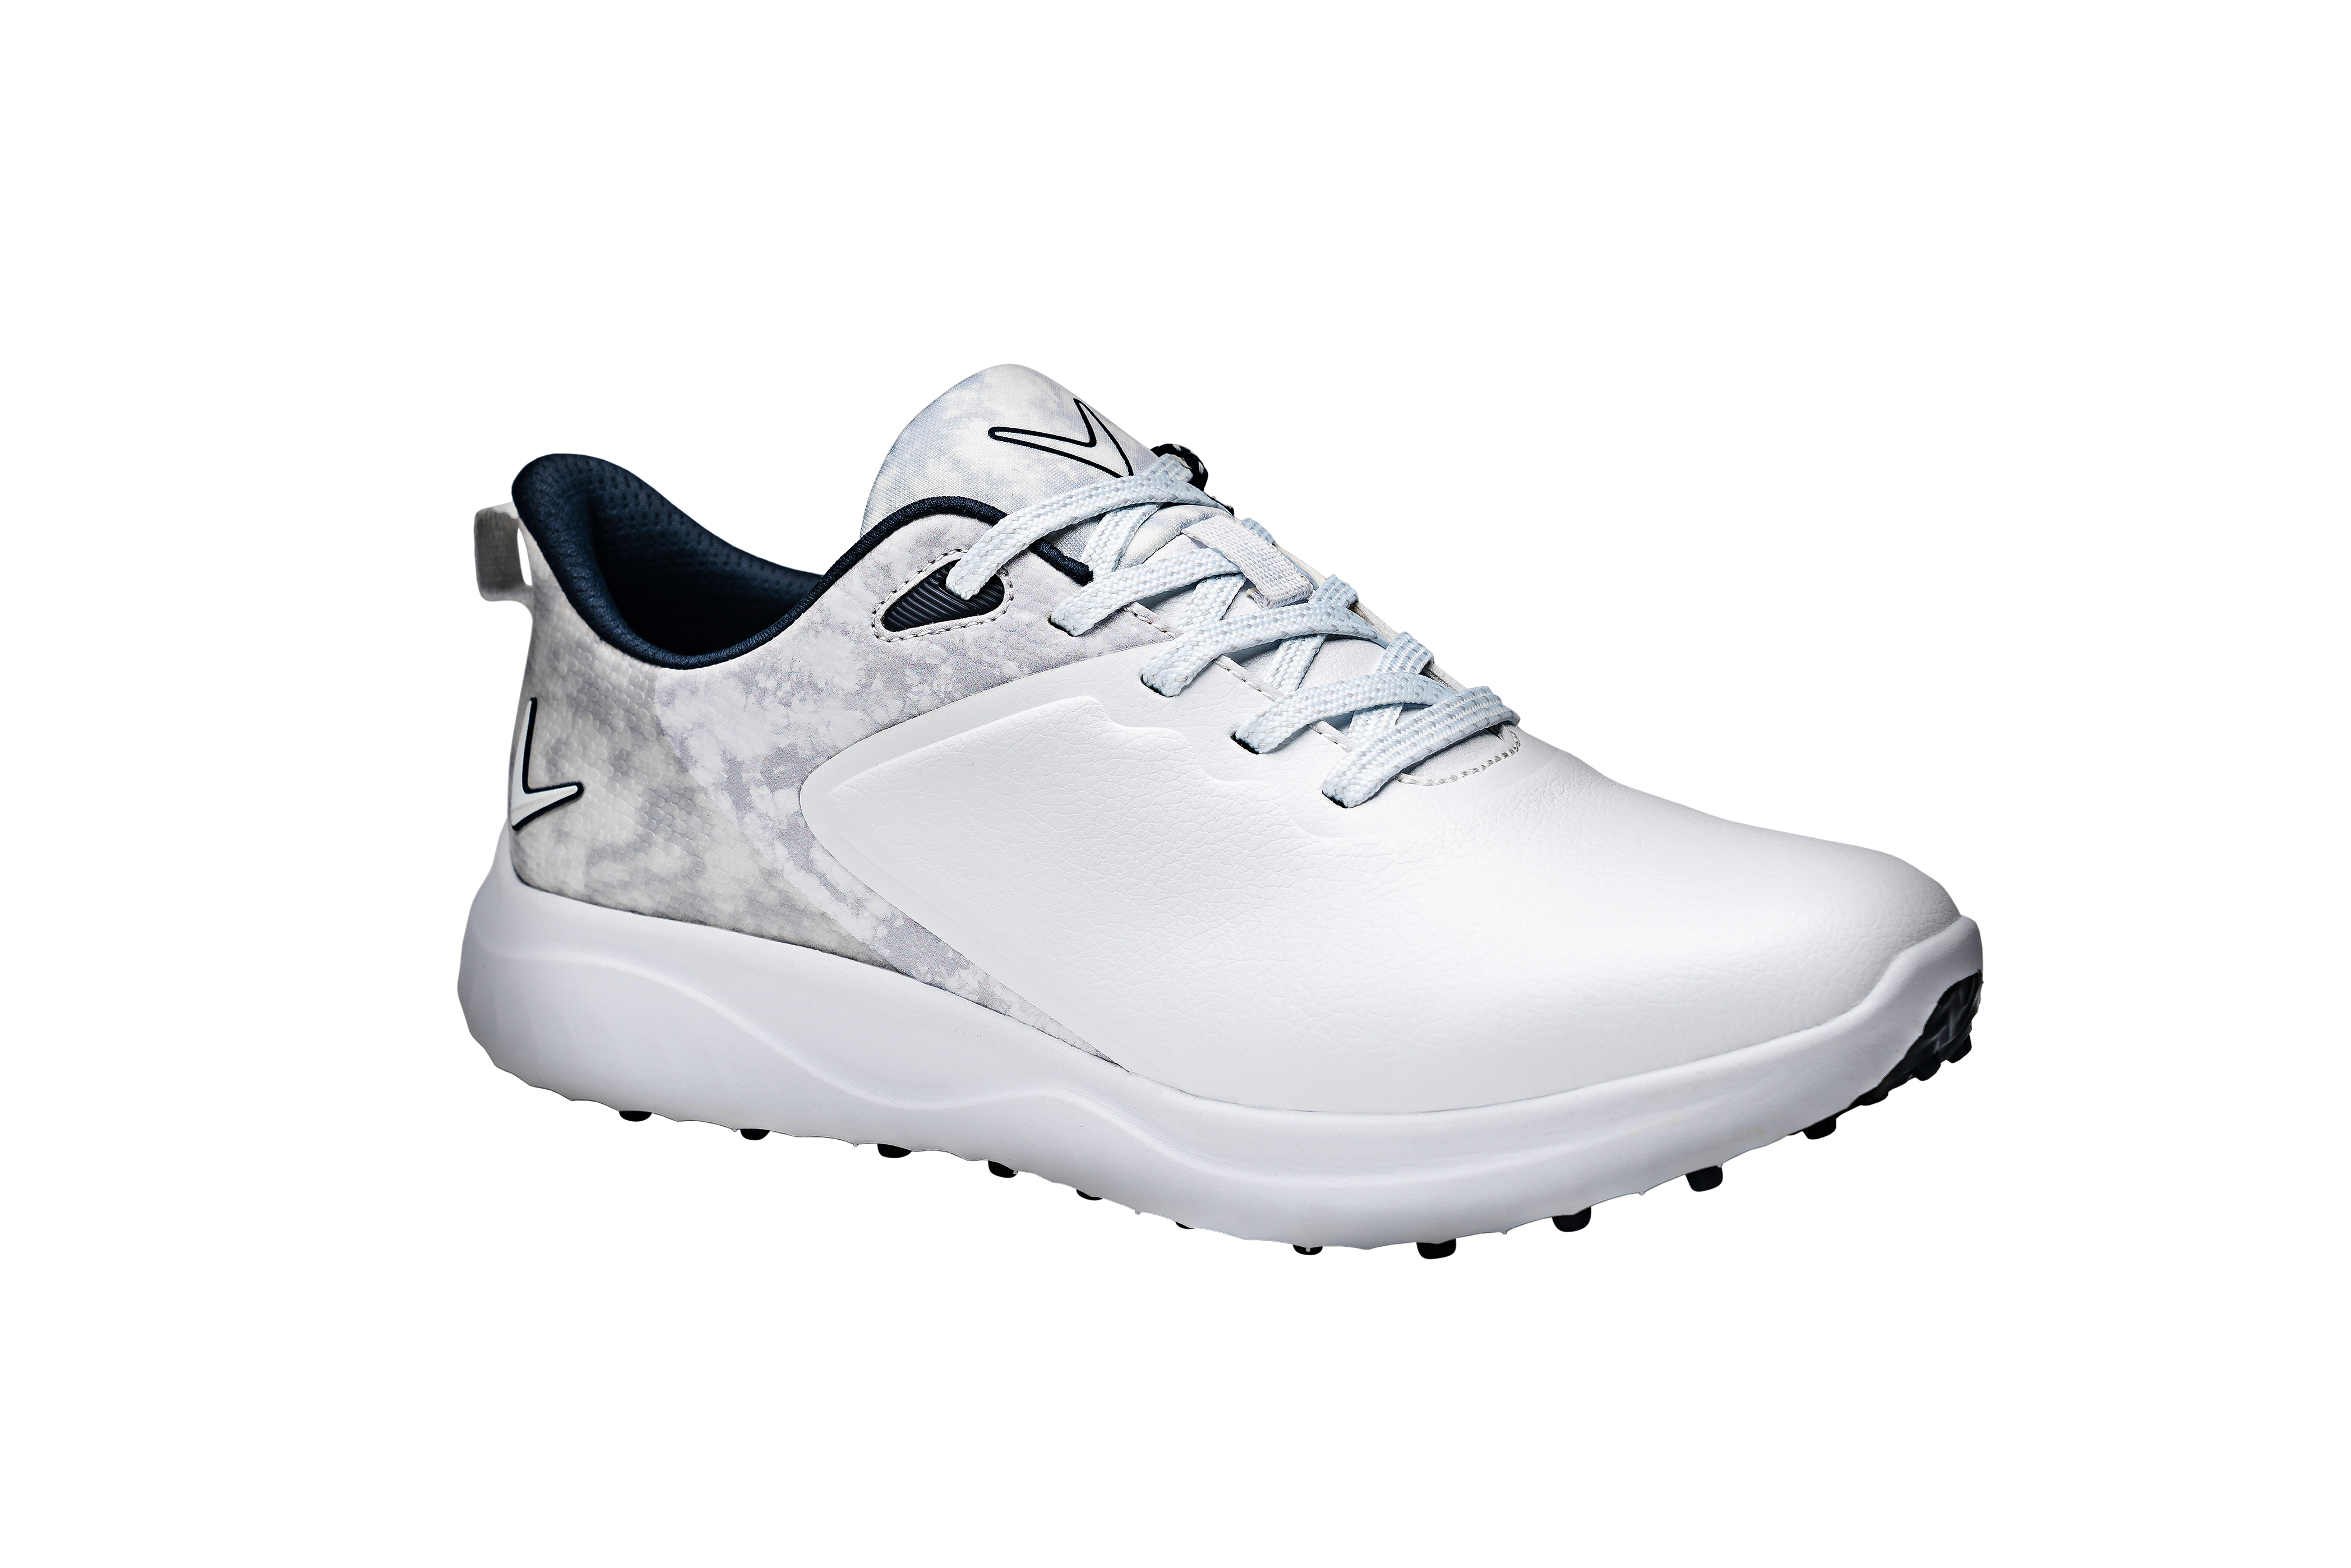 Callaway Anza dámské golfové boty, bílé/šedé, vel. 6 UK